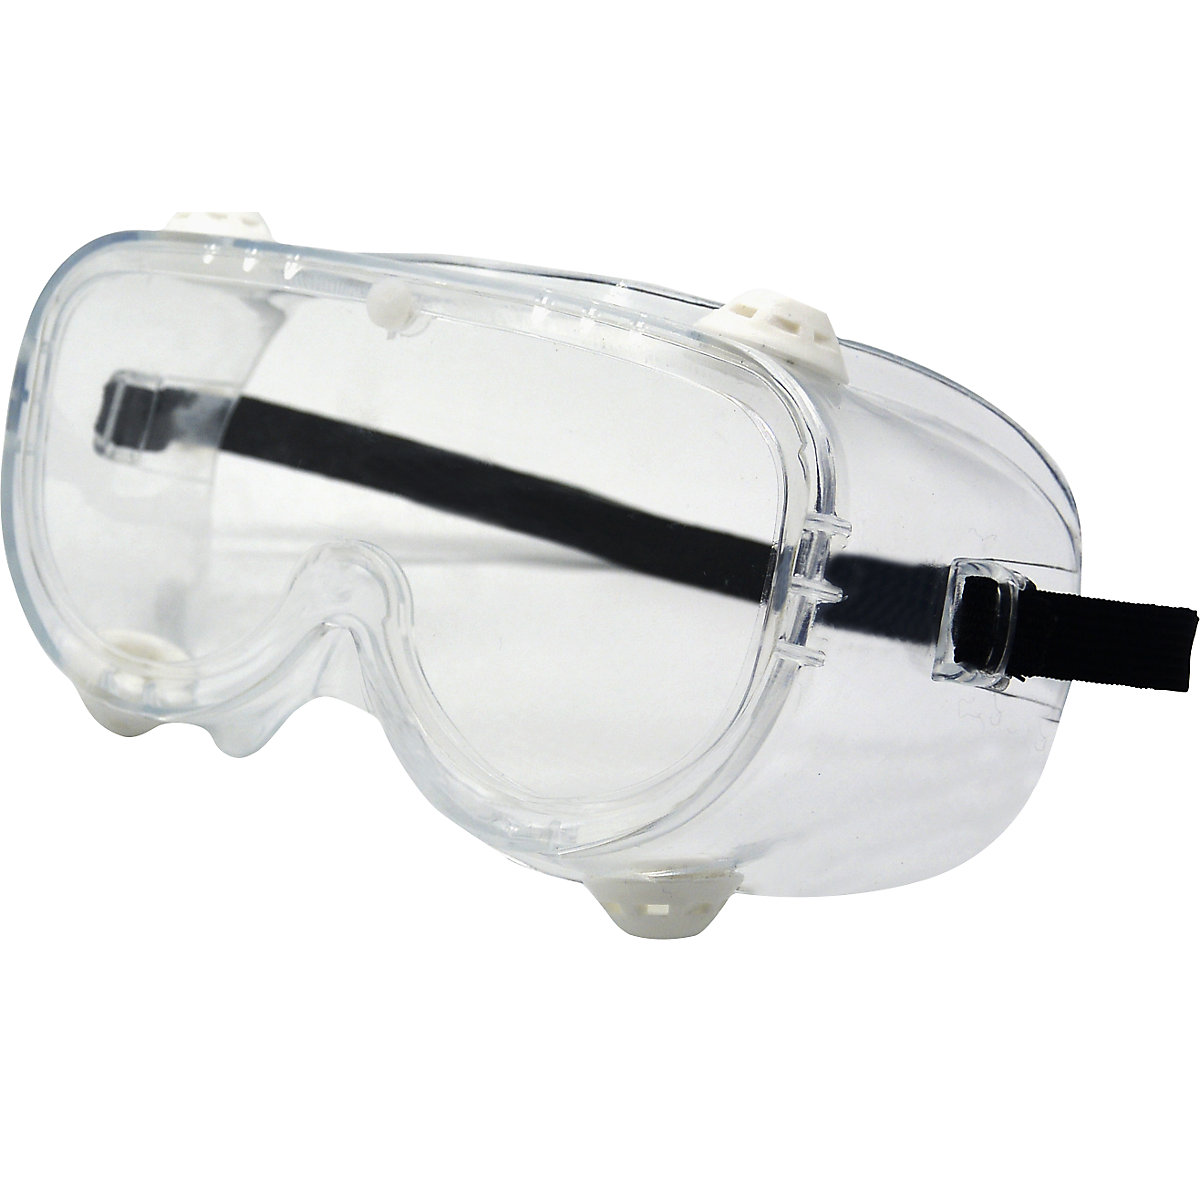 Okulary ochronne zapewniające pełną widoczność, zgodne z EN 166 (opak. 10 lub 200 szt.)